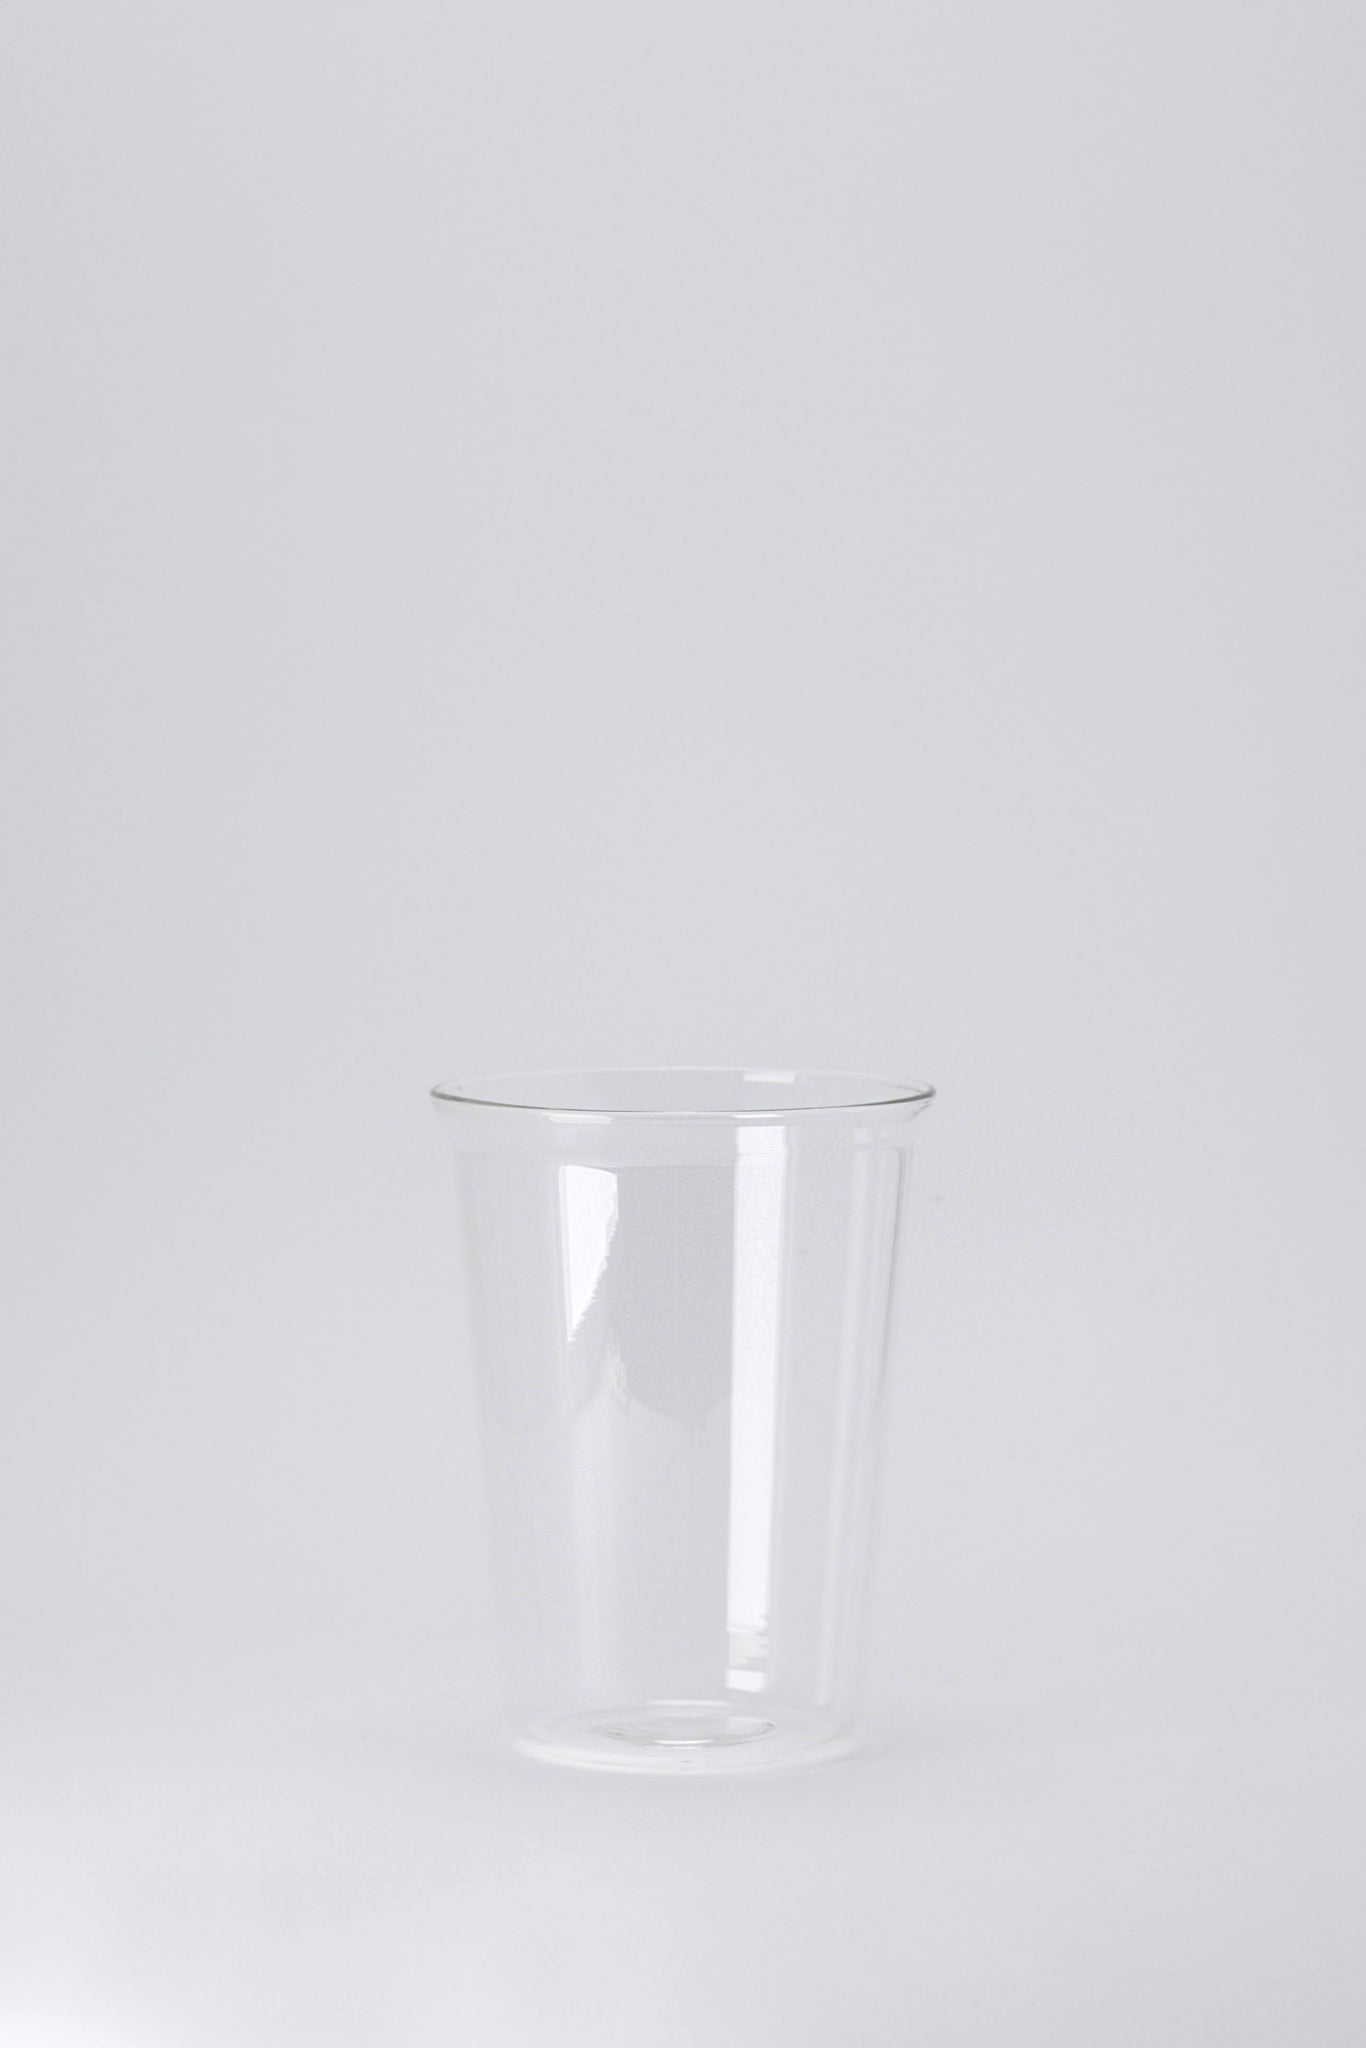 Cast medium glass-Kinto-KIOSK48TH